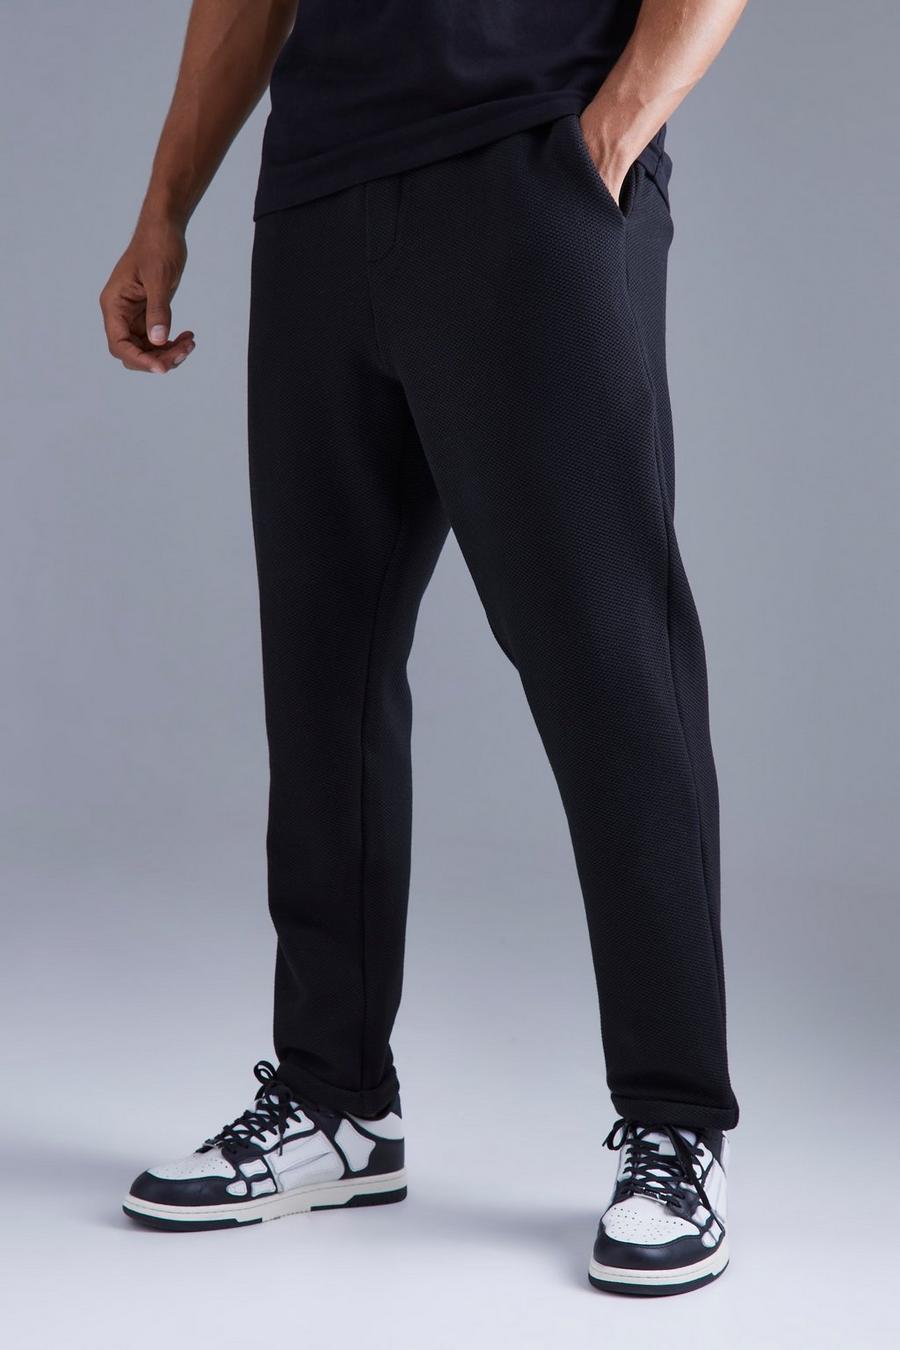 Pantaloni Smart affusolati elasticizzati con trama, Black